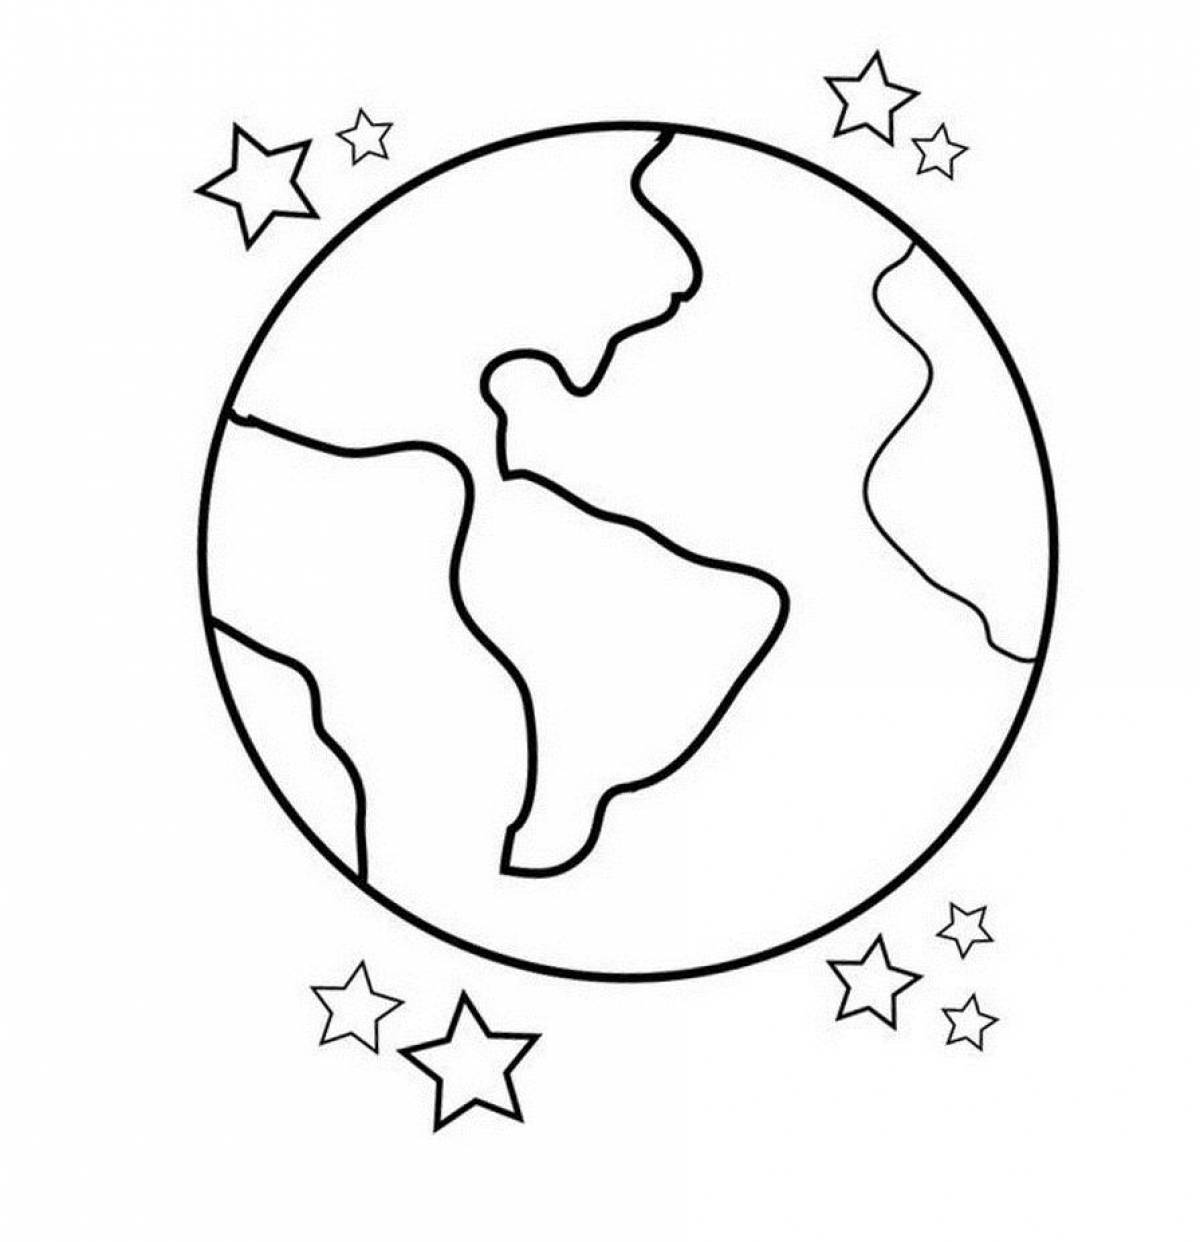 Увлекательная раскраска «планета земля» для детей